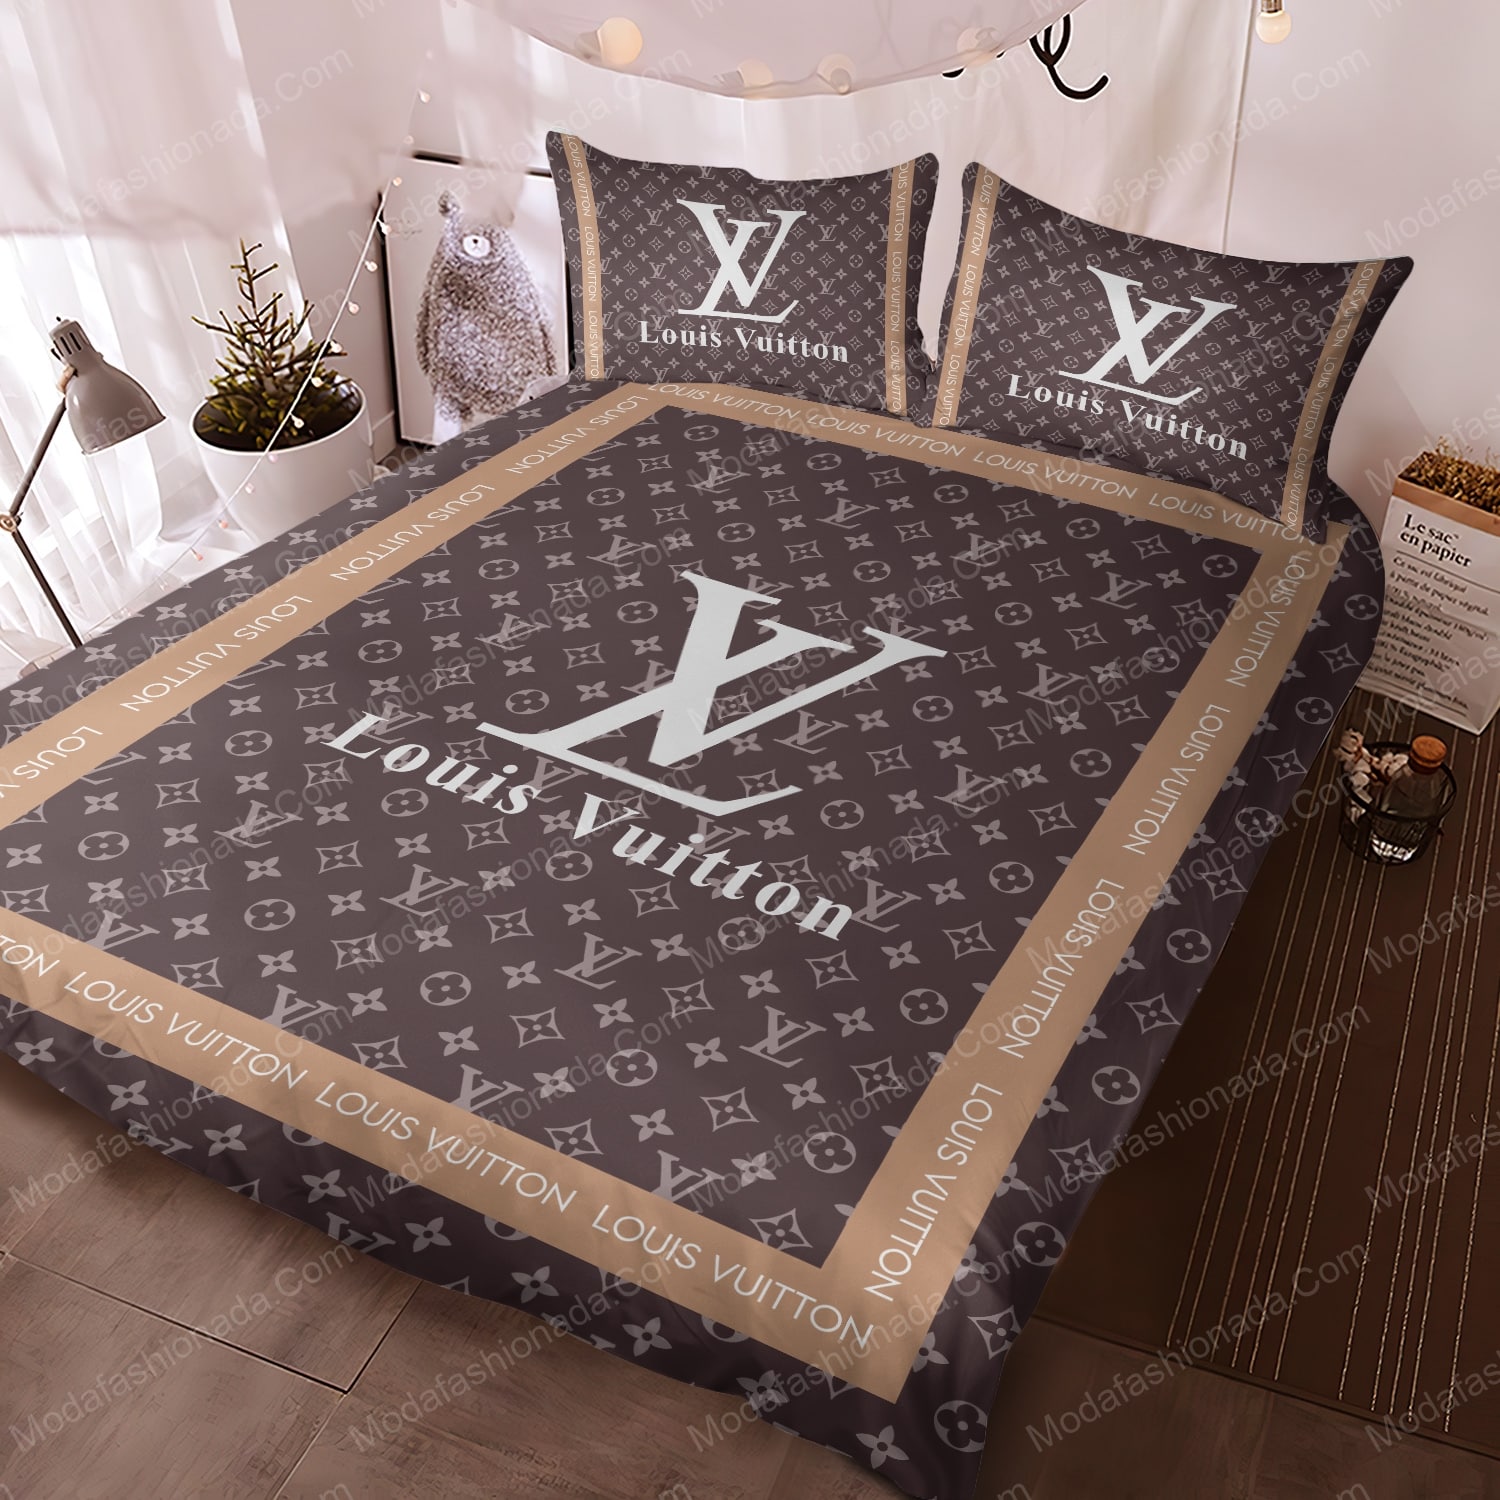 Louis Vuitton Bedding Set Duvet Cover New Design 28 - Usalast